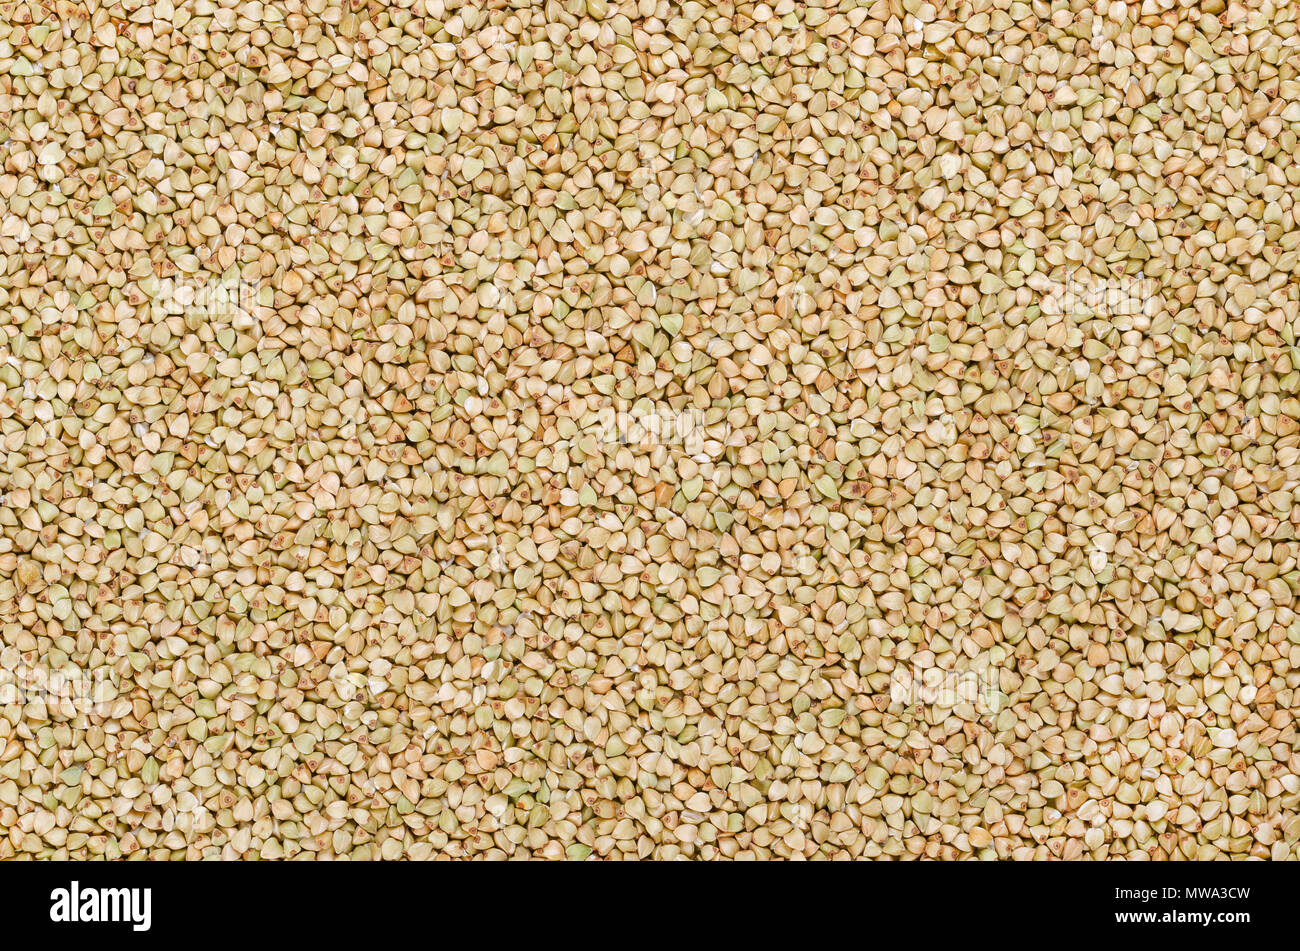 Les grains de sarrasin décortiqué, de la surface et l'arrière-plan. Gluten Free pseudocereal. Fagopyrum esculentum, également connu sous le nom japonais ou silverhull le sarrasin Banque D'Images